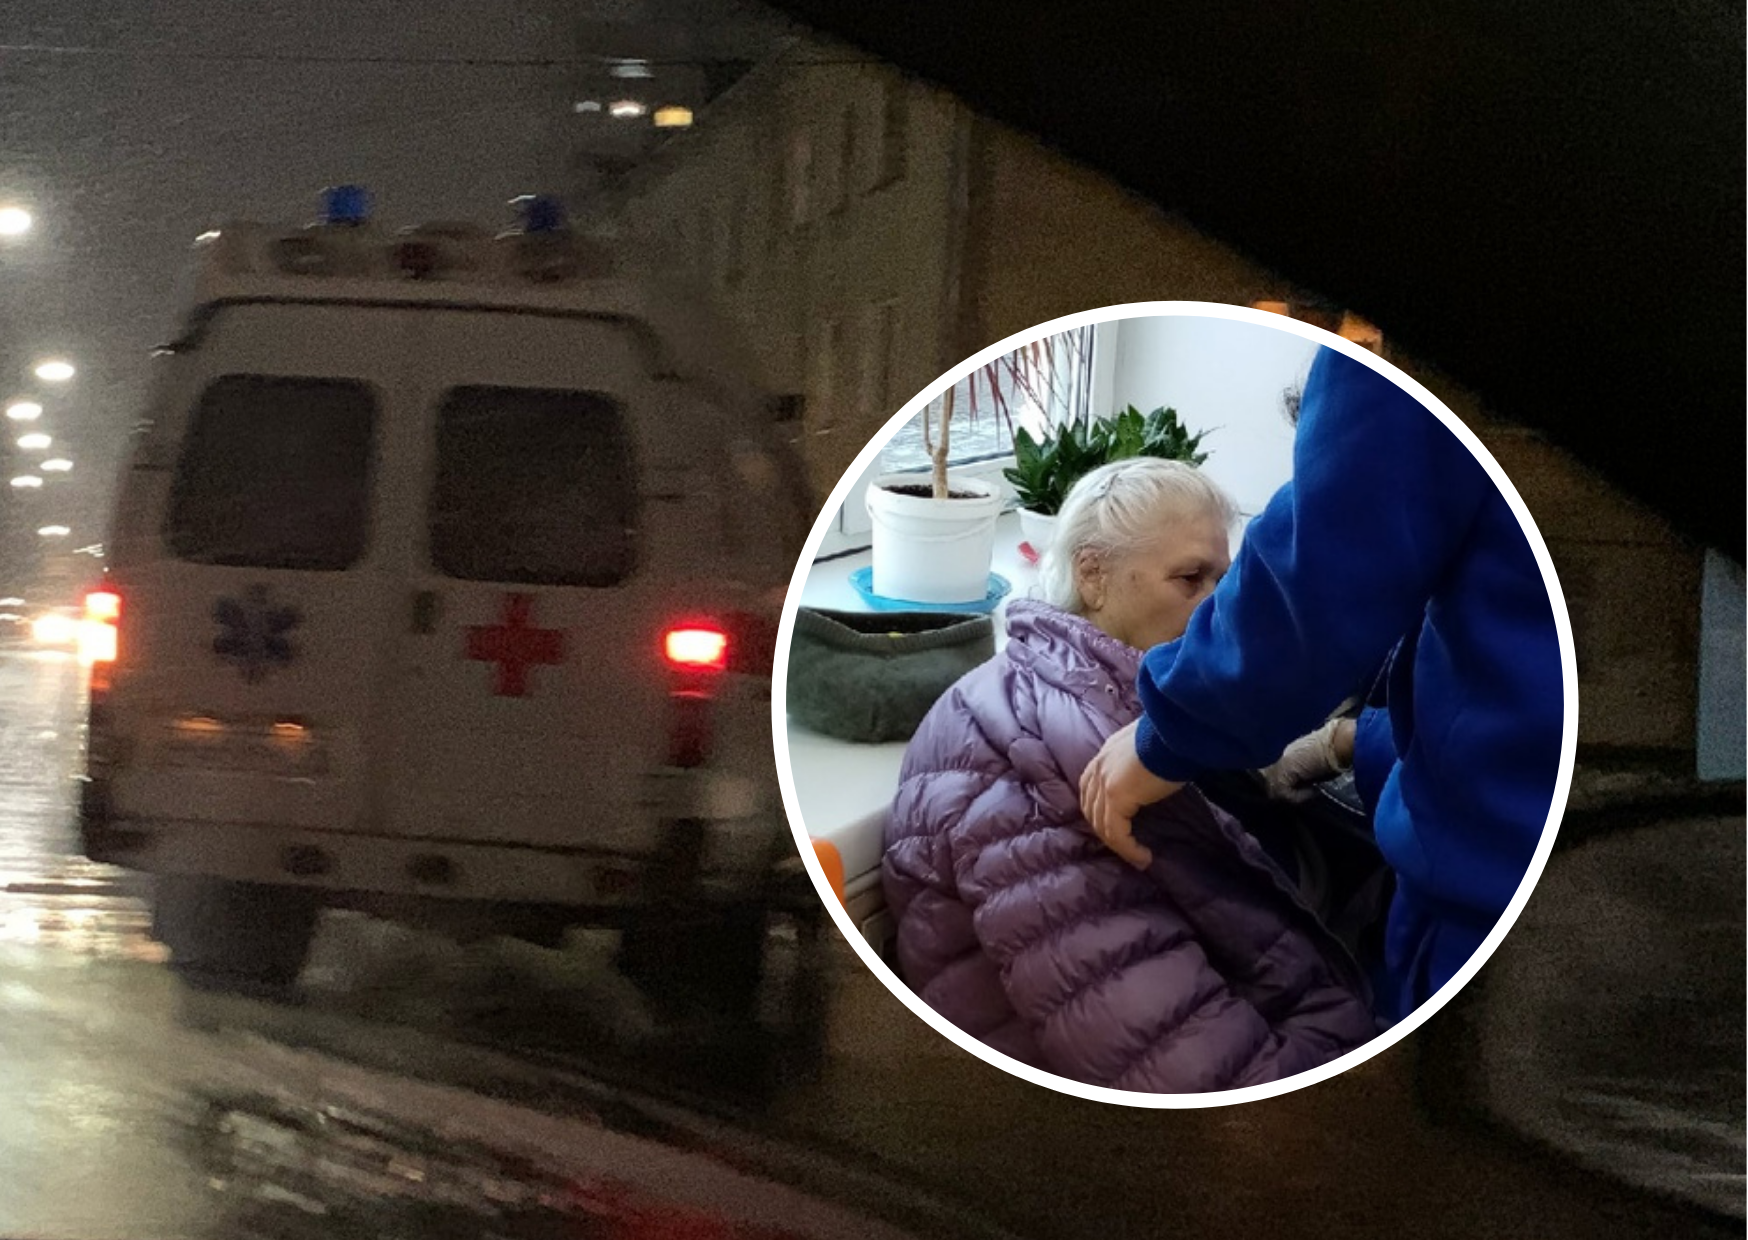 Хрипит в аптеке: в Ярославле нашли немощную бабушку без сознания 